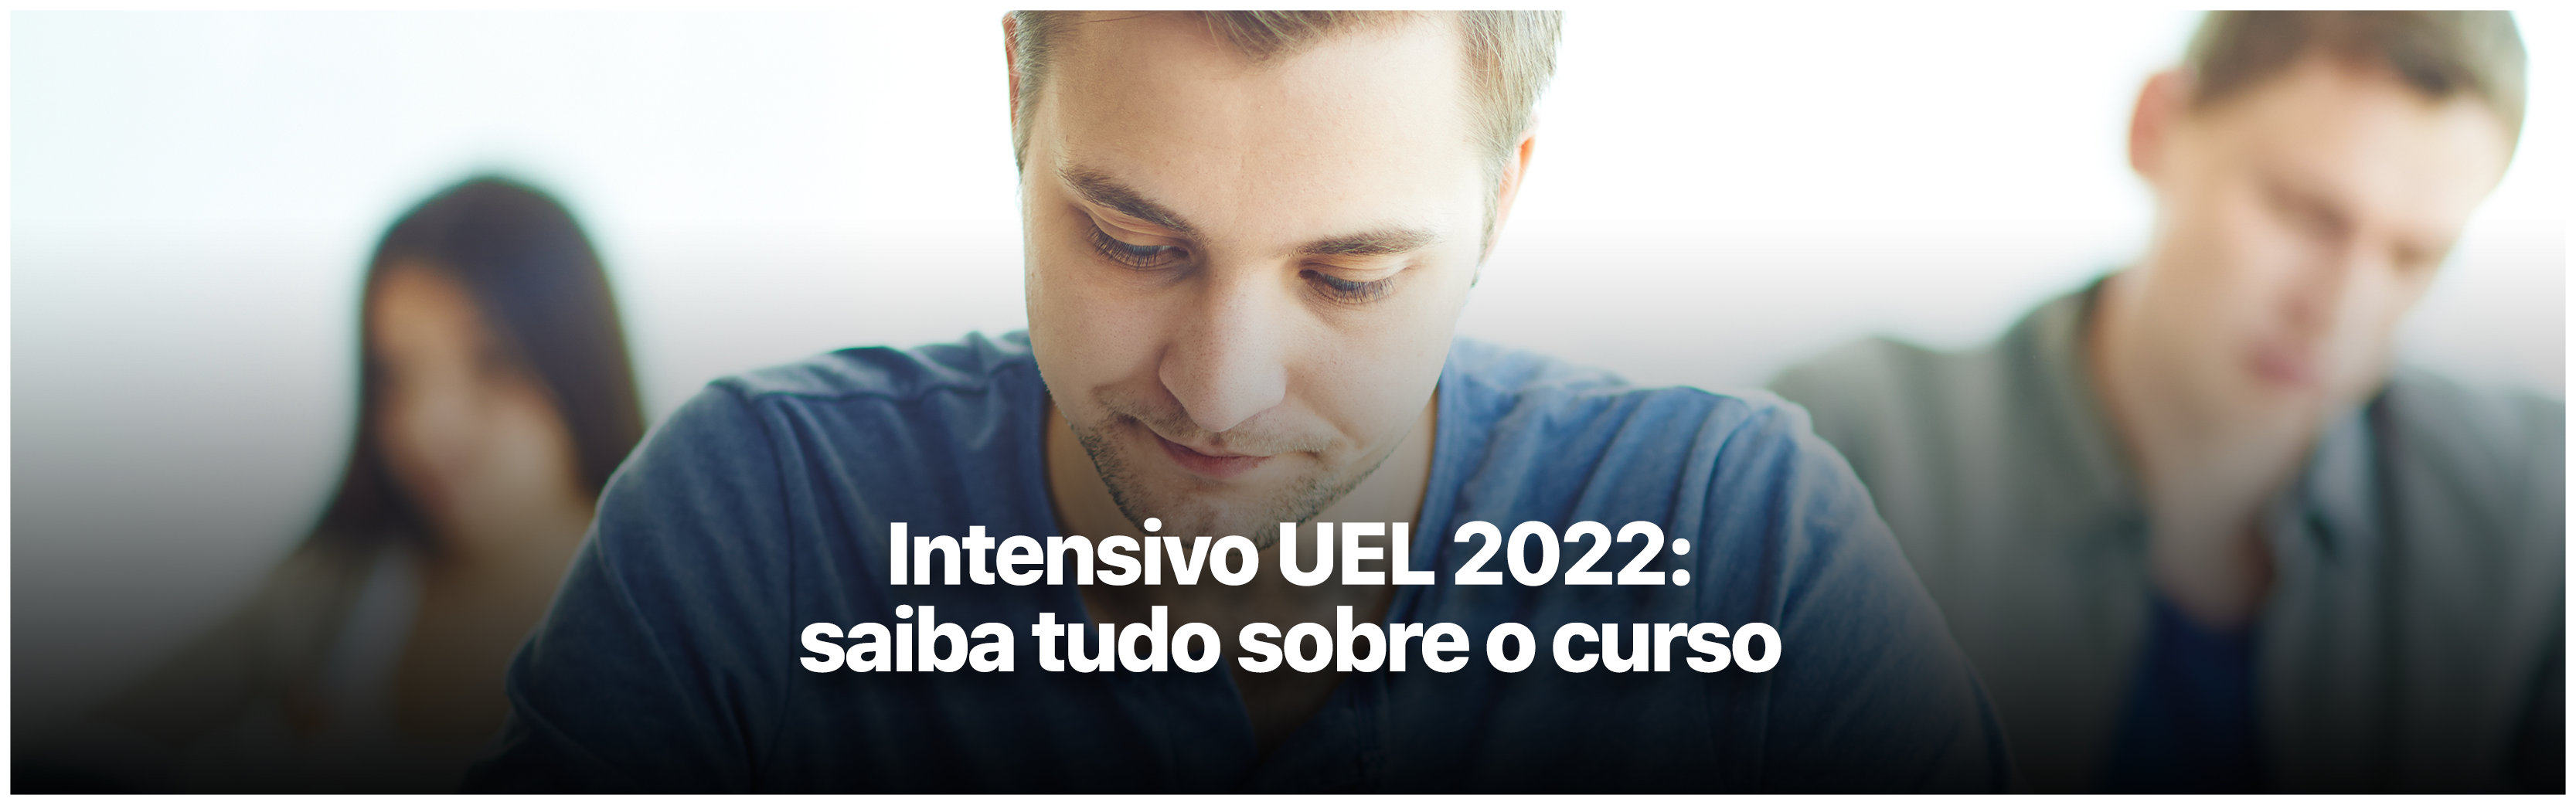 Saiba como vai funcionar o curso Intensivo UEL 2022 do Sigma em Londrina